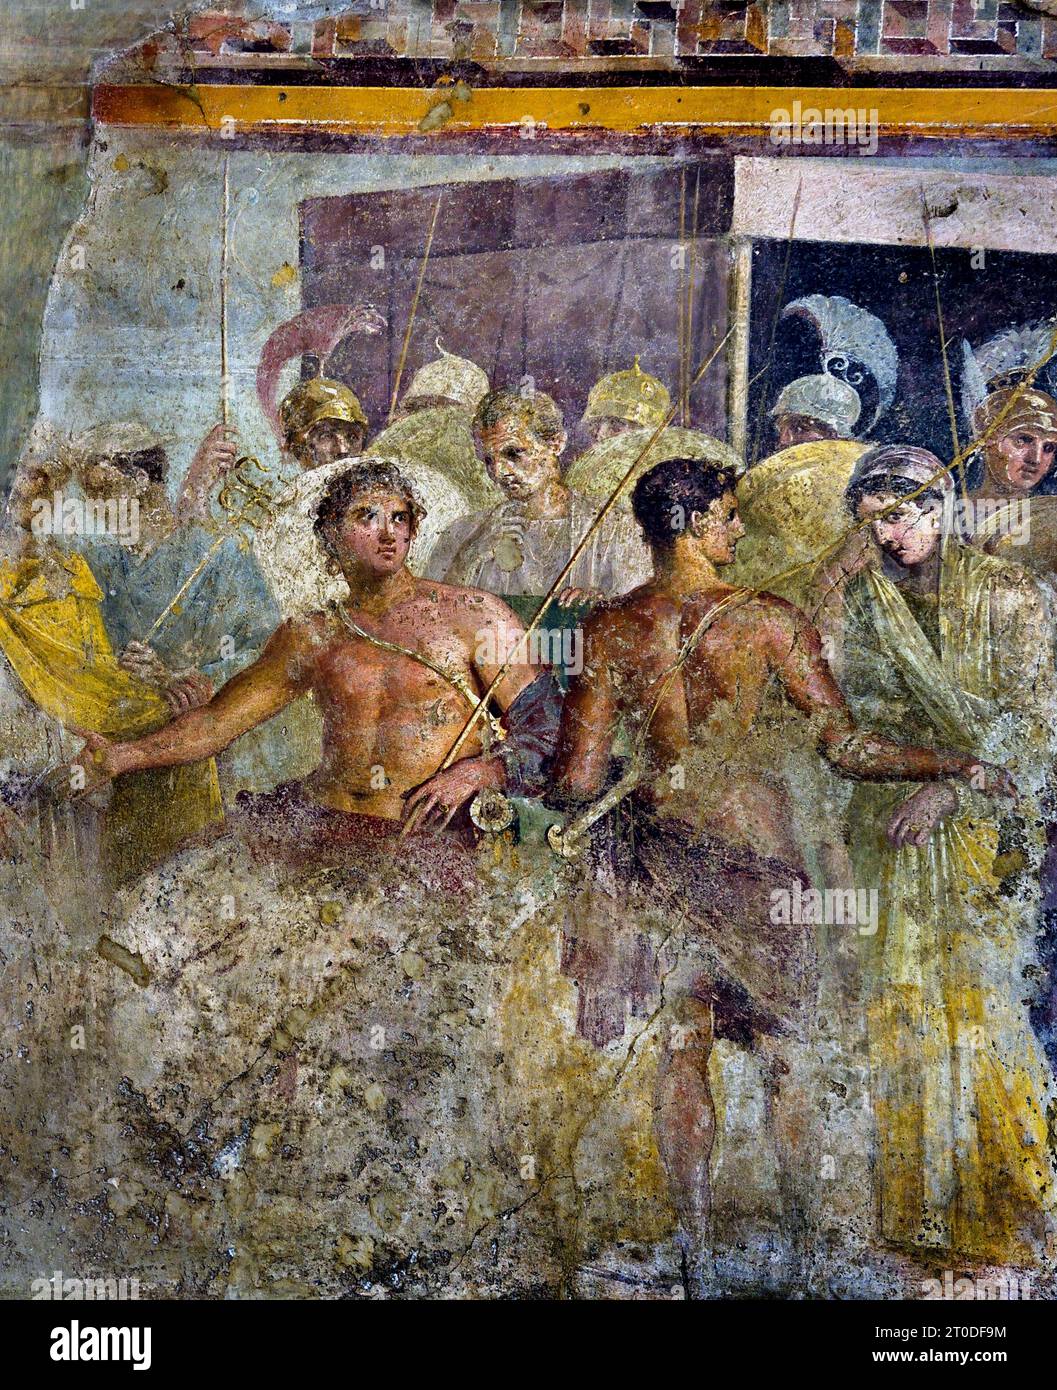 La resa di Achille di Briseis ad Agamennone (Troia) dalla Casa del tragico poeta fresco città romana di Pompei si trova vicino a Napoli, nella regione Campania d'Italia. Pompei fu sepolta sotto 4-6 m di cenere vulcanica e pomice nell'eruzione del Vesuvio nel 79 d.C. Italia Achille è costretto a rinunciare a Briseis, il prigioniero con cui si era innamorato, ad Agamennone, dopo che Agamennone dovette restituire Criseide a suo padre, Chryses, il sacerdote di Apollo. Casa del tragico poeta. Foto Stock